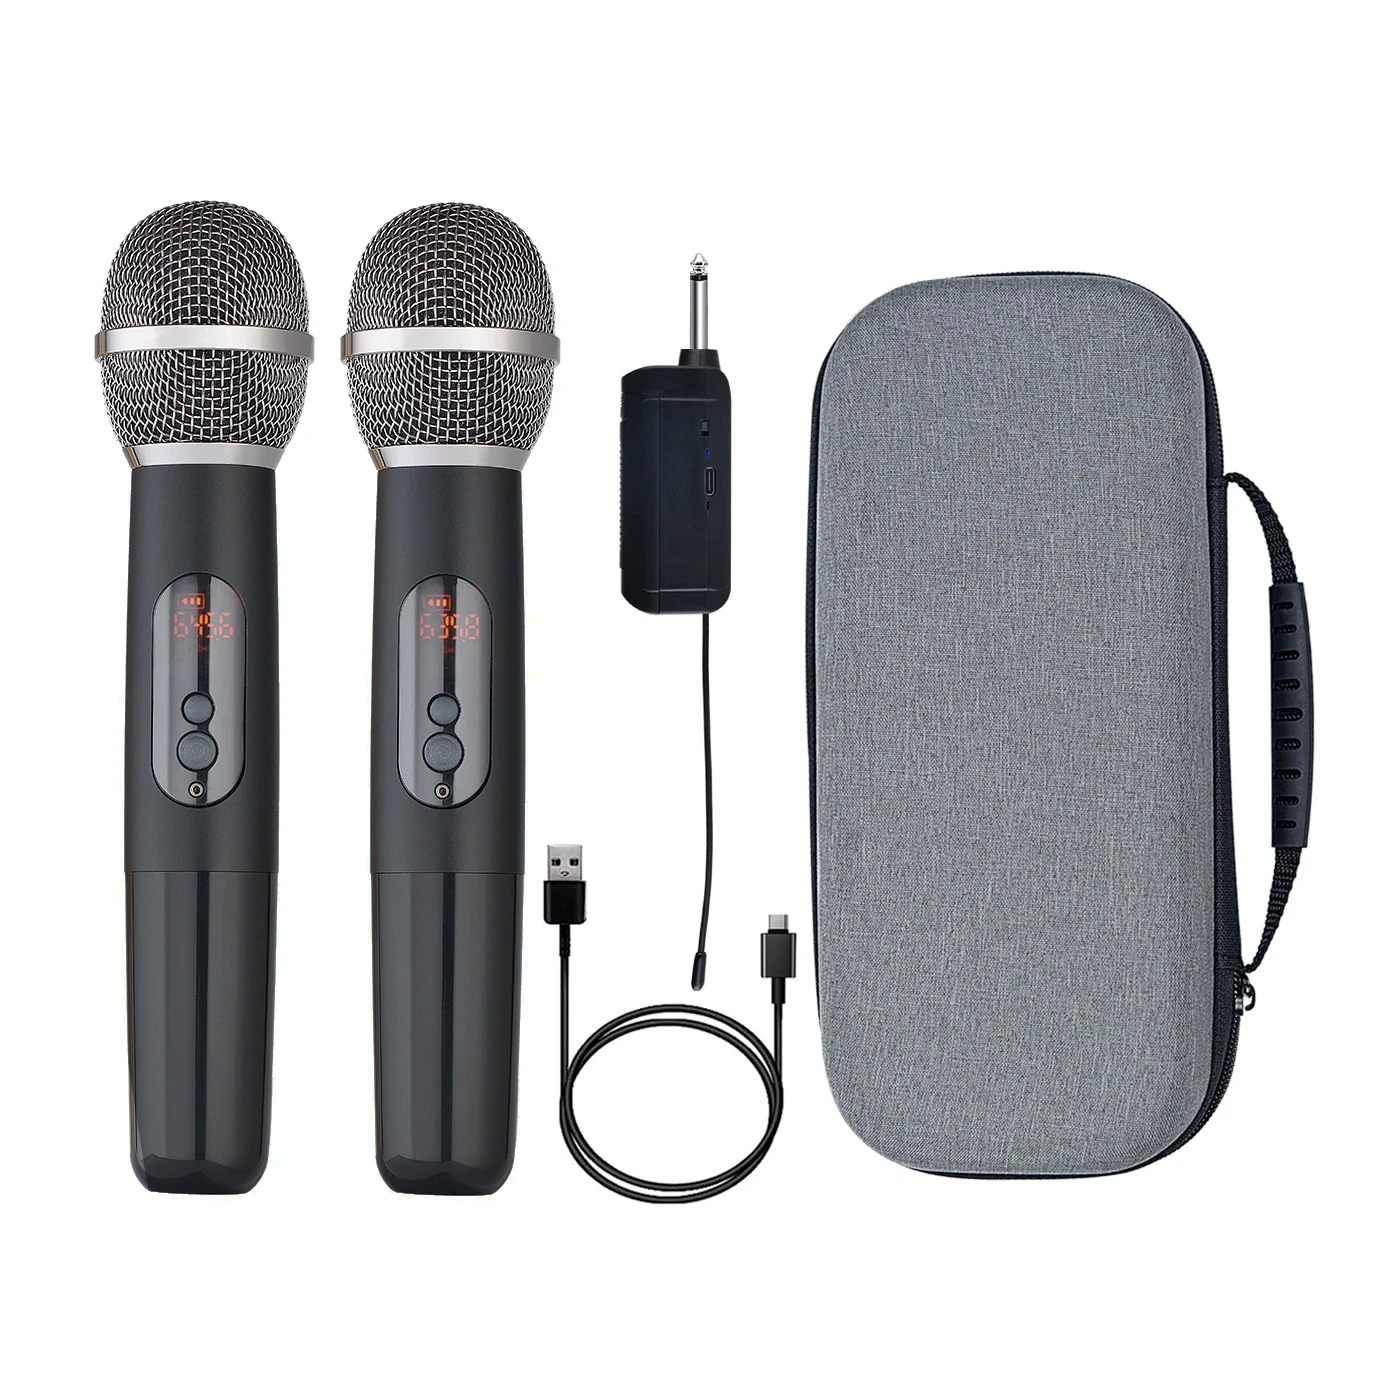 

Heikuding UHF Dual Karaoke DJ Microphone Cordless Dynamic Handheld Mic for Singing Stage Church Adjustable Frequencies MIC 60m